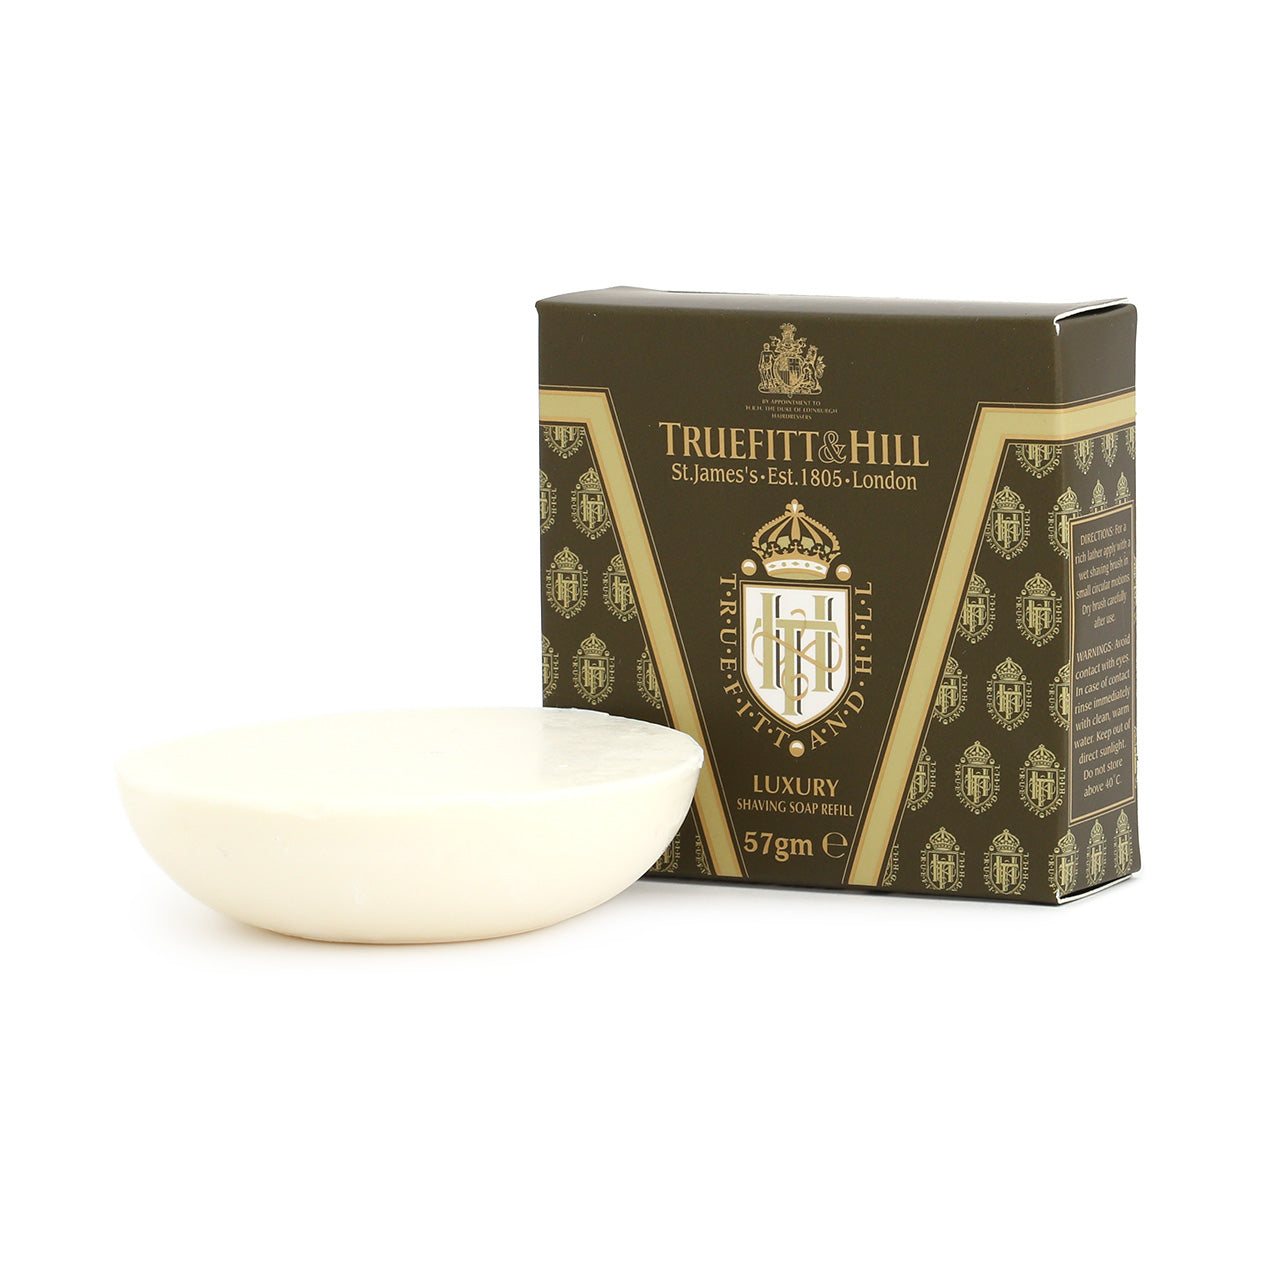 Truefitt & Hill Sandalwood Luxury Shaving Soap - small refill for mug